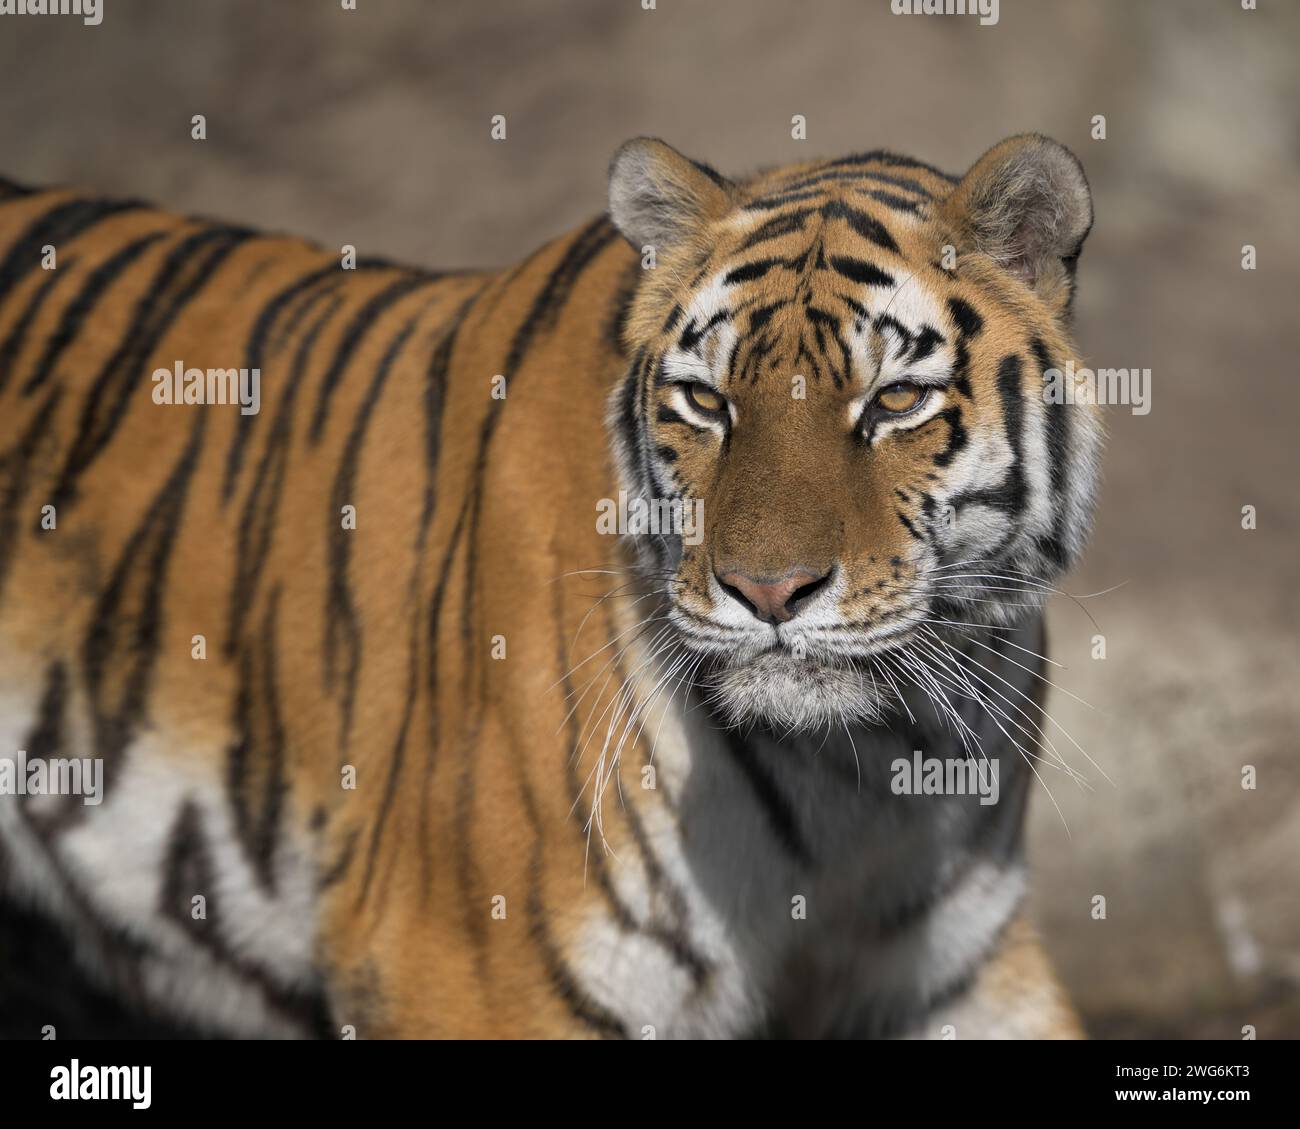 Amur tiger (Panthera tigris altaica) closeup portrait Stock Photo